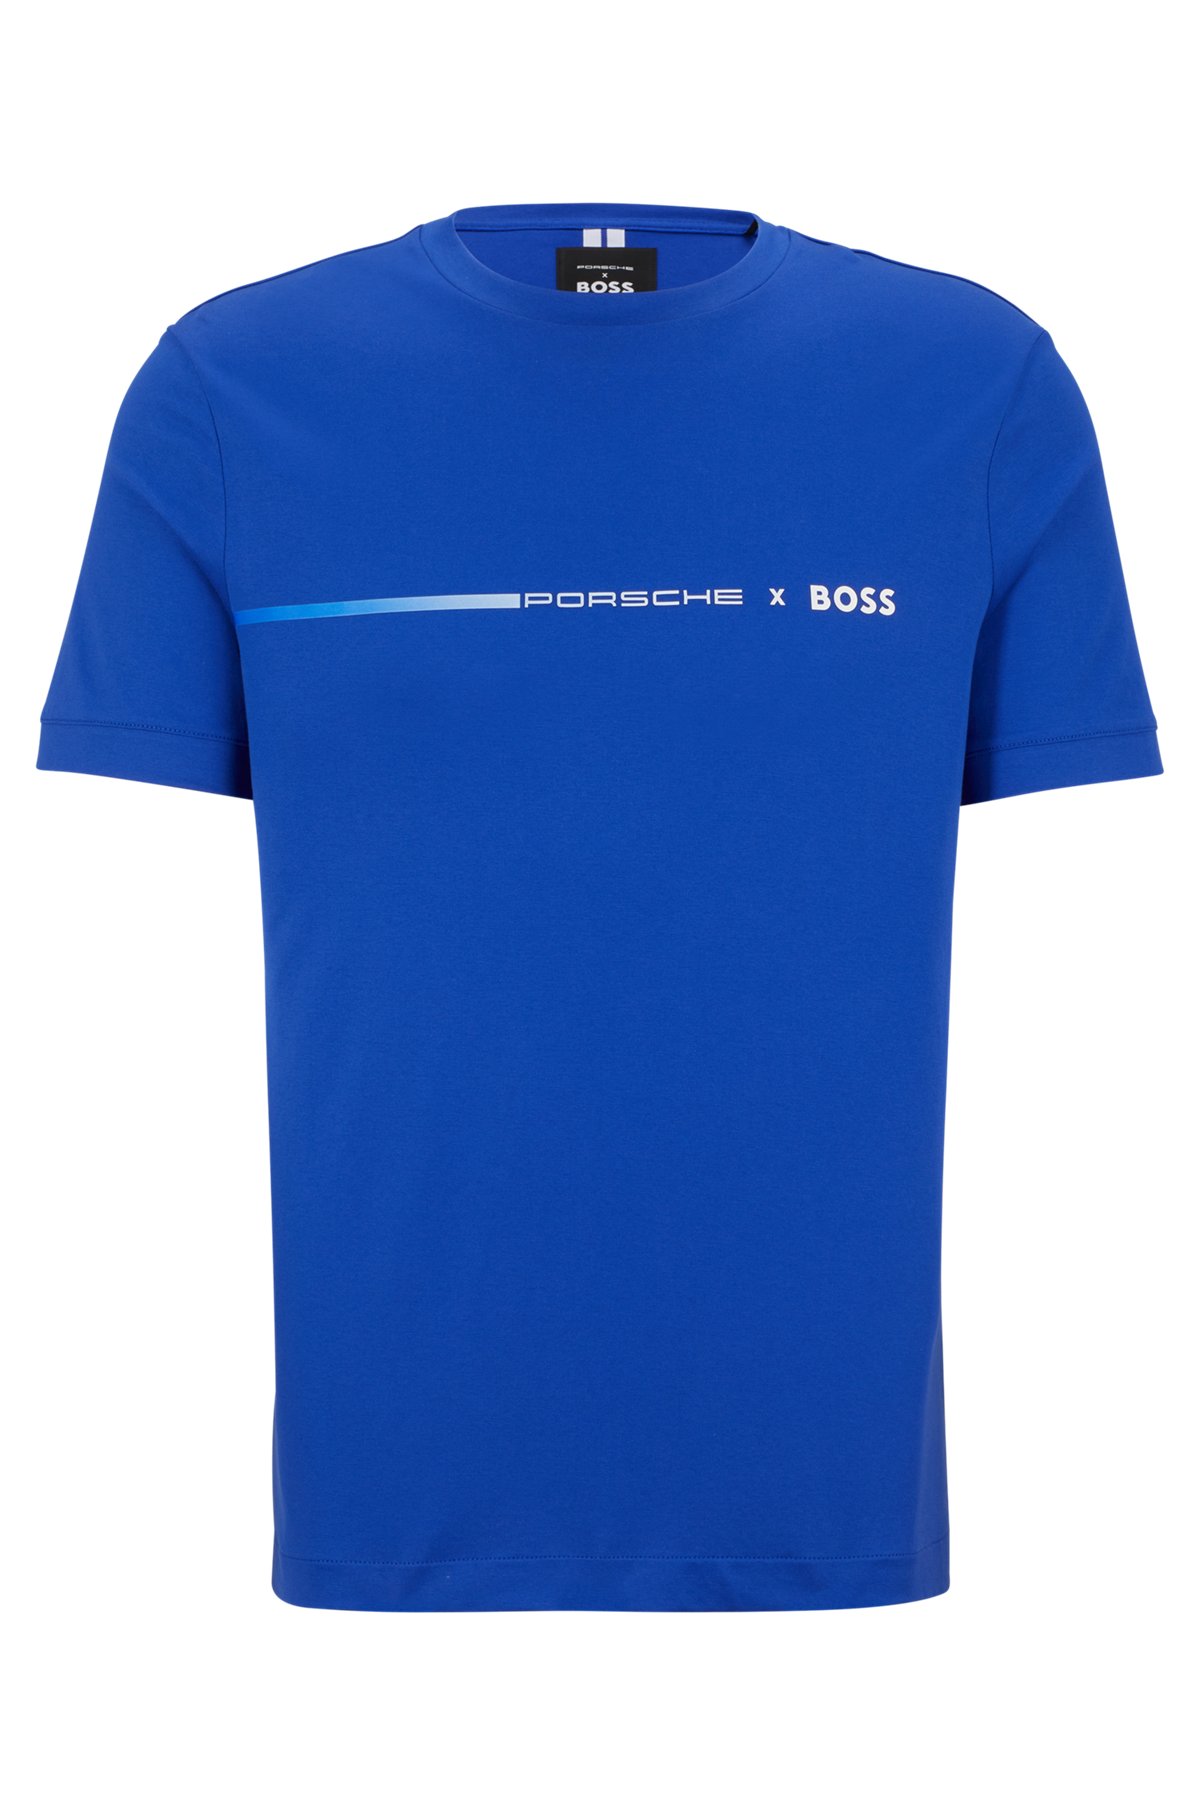 BOSS - Porsche x BOSS mercerized-cotton T-shirt with exclusive branding